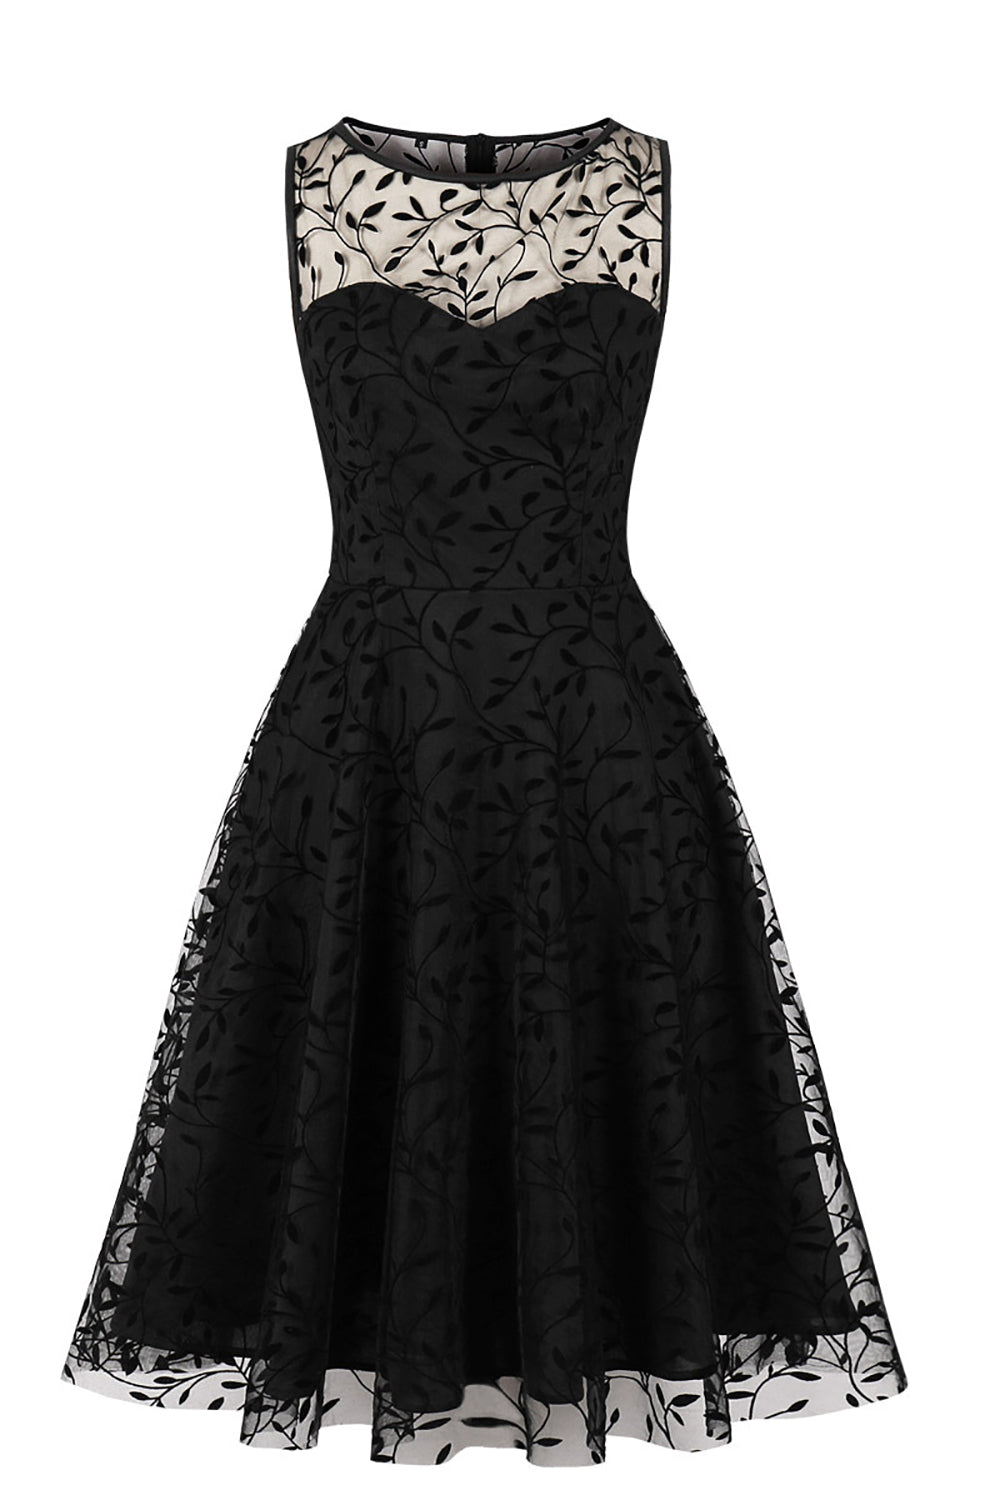 Black Lace Vintage Dress